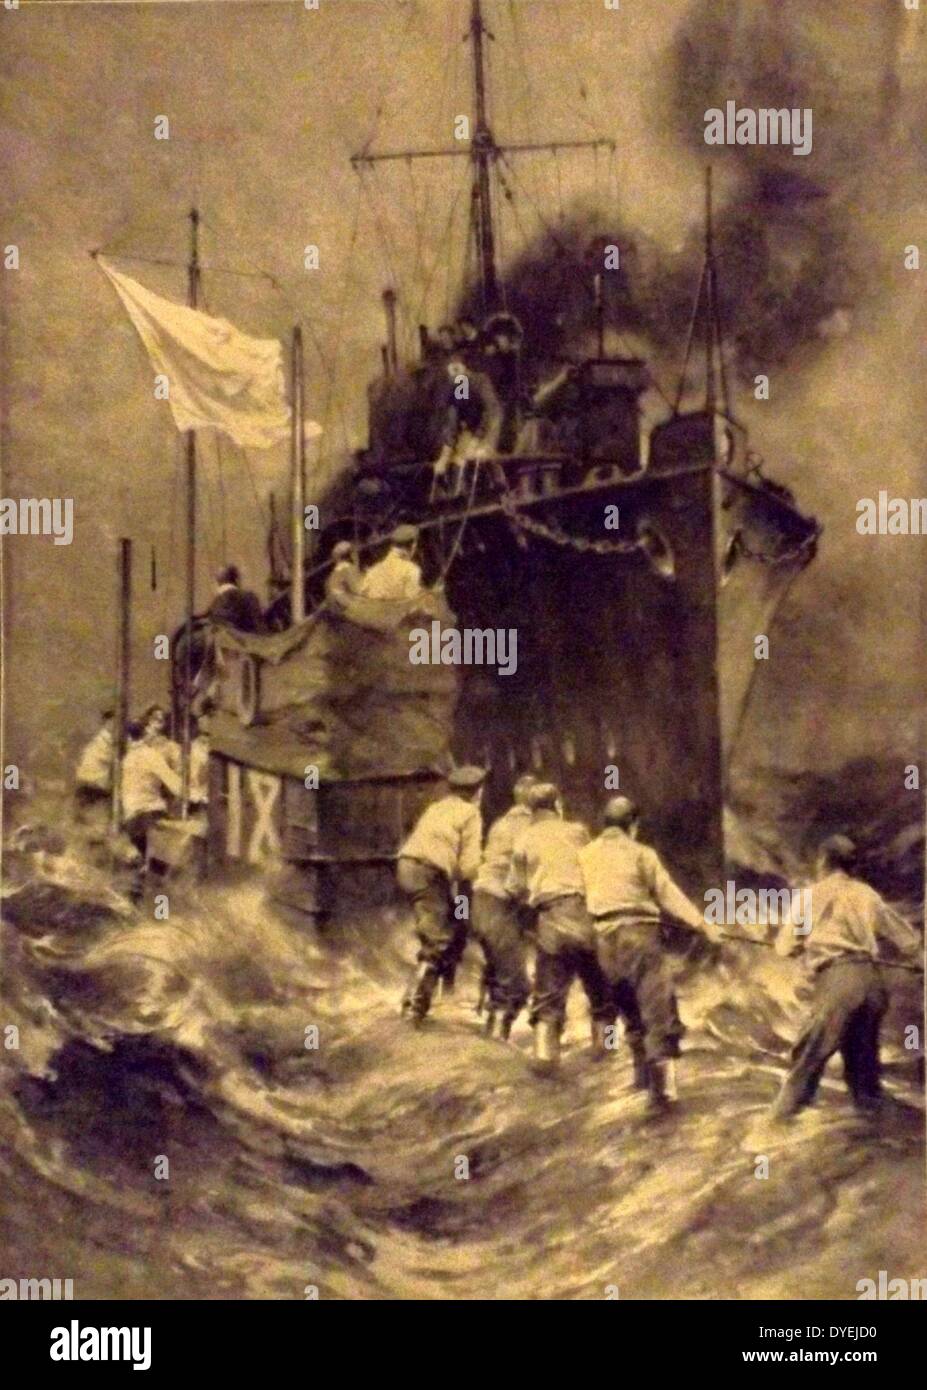 Der Erste Weltkrieg. 1914, Britische Truppen kommen die Besatzung eines deutschen U-Boot U-Boot aus beschädigt vor der schottischen Küste im November 1914 zu retten. Belgischen hafen von Antwerpen Stockfoto